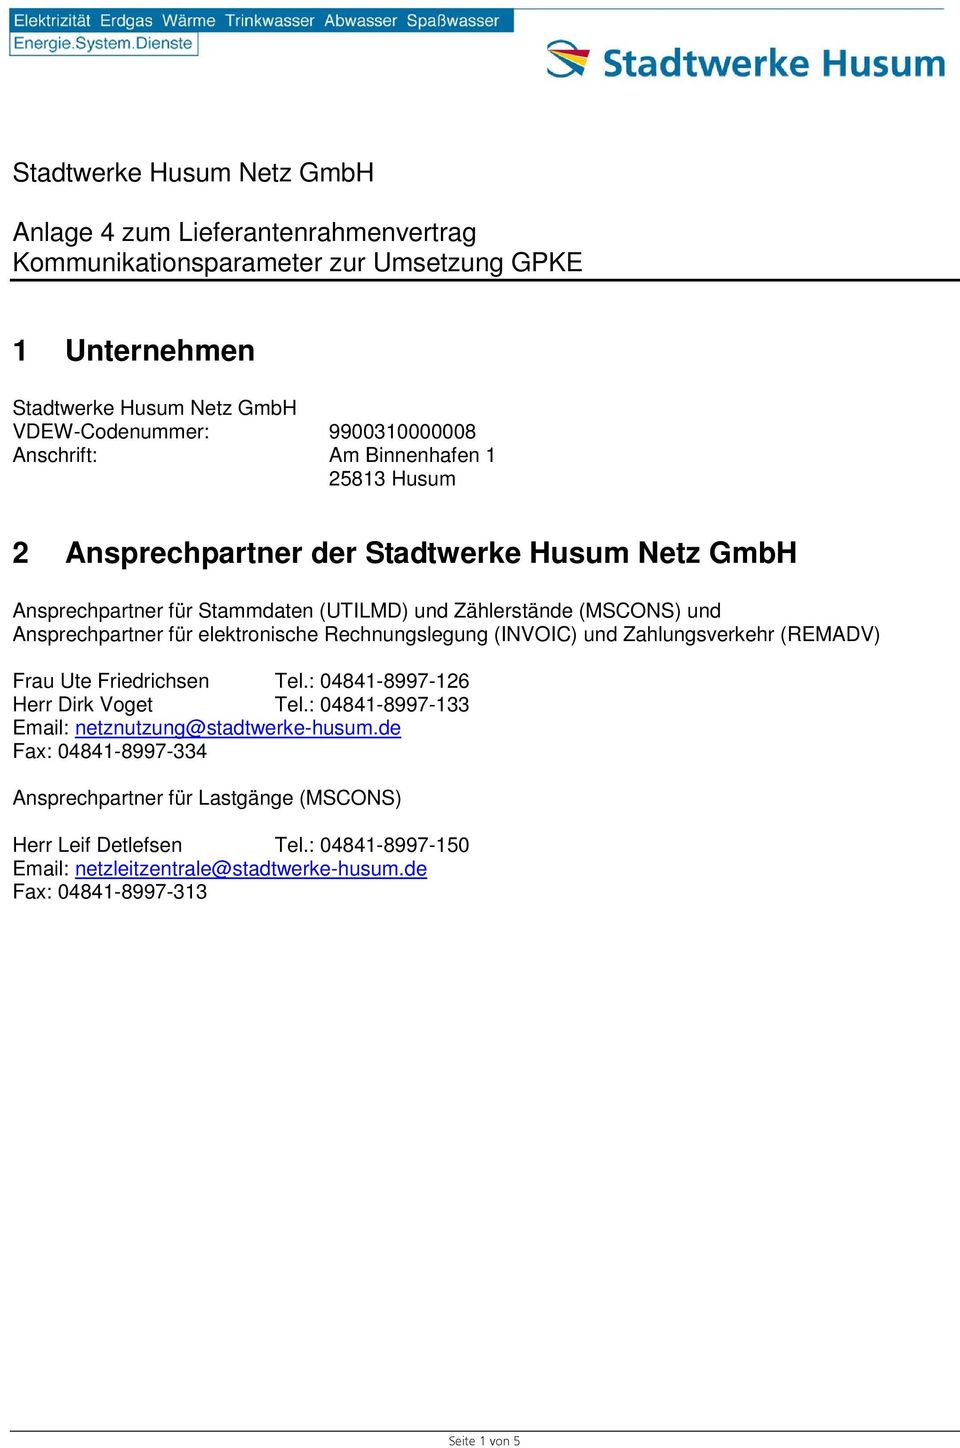 Zahlungsverkehr (REMADV) Frau Ute Friedrichsen Tel.: 04841-8997-126 Herr Dirk Voget Tel.: 04841-8997-133 Email: netznutzung@stadtwerke-husum.